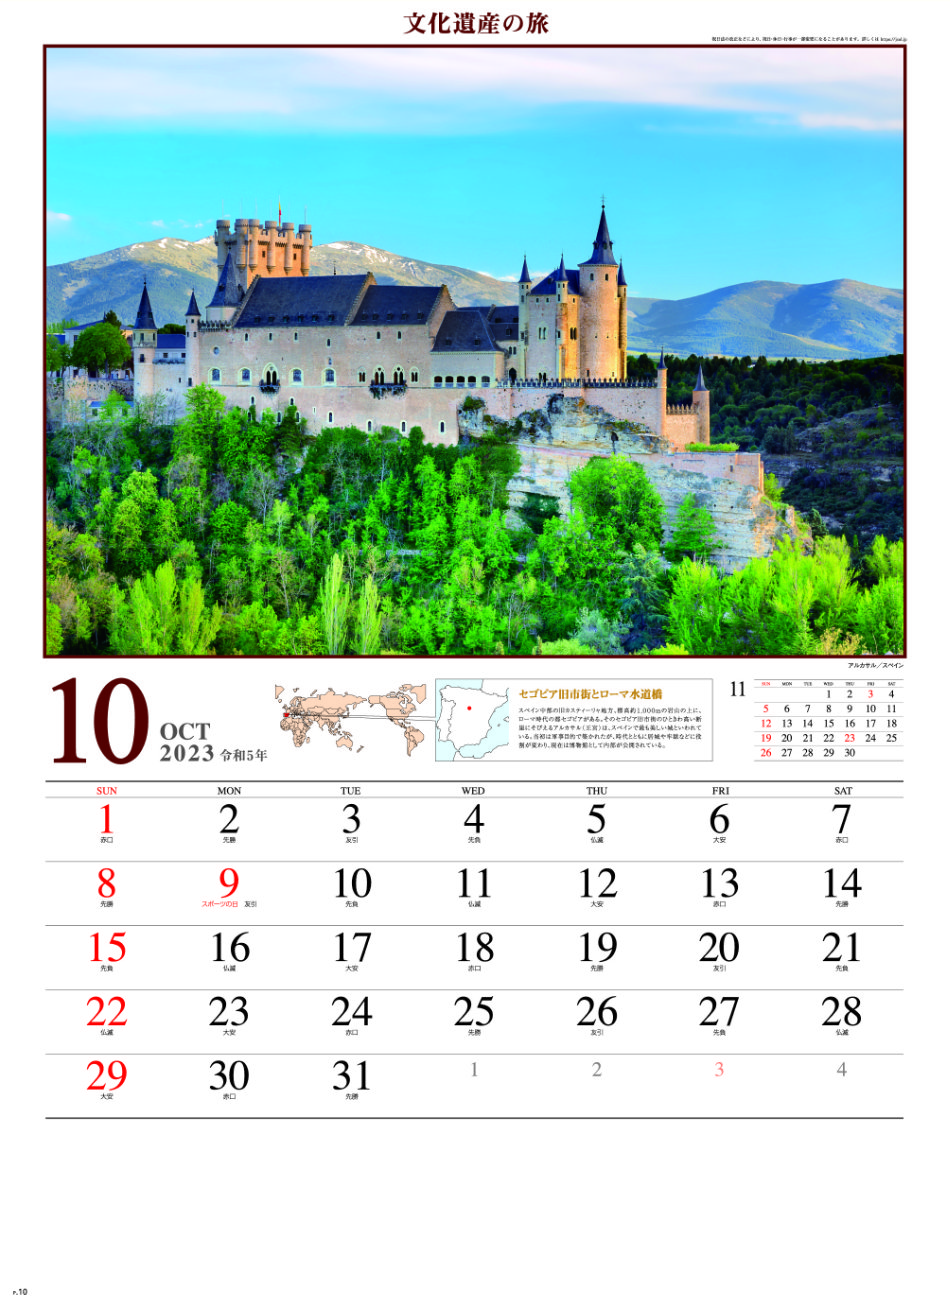 10月 アルカサル(スペイン) 文化遺産の旅(ユネスコ世界遺産） 2023年カレンダーの画像